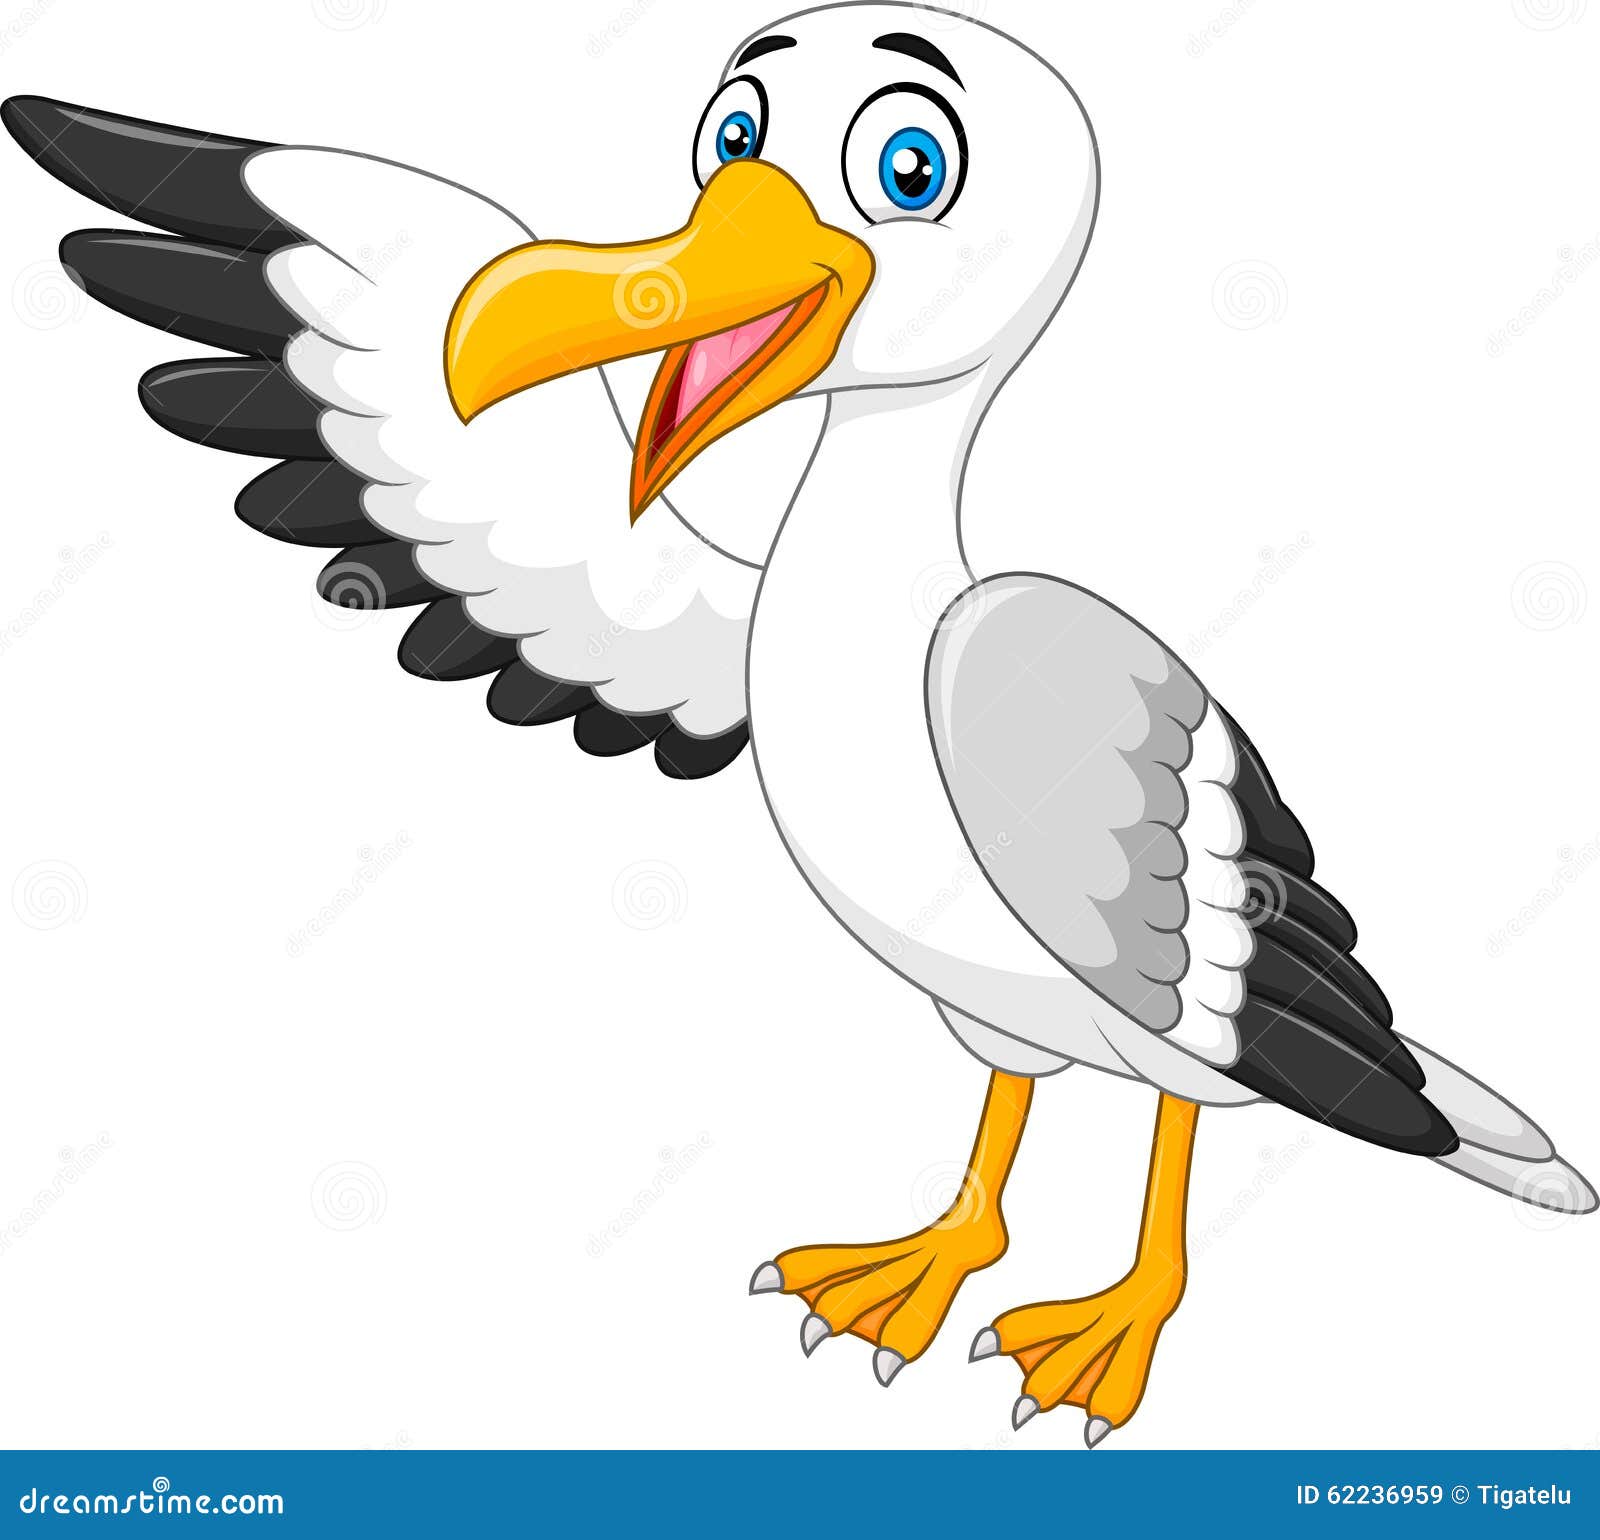 Cartoon Seagull Stock Illustrations – 5,527 Cartoon Seagull Stock  Illustrations, Vectors & Clipart - Dreamstime